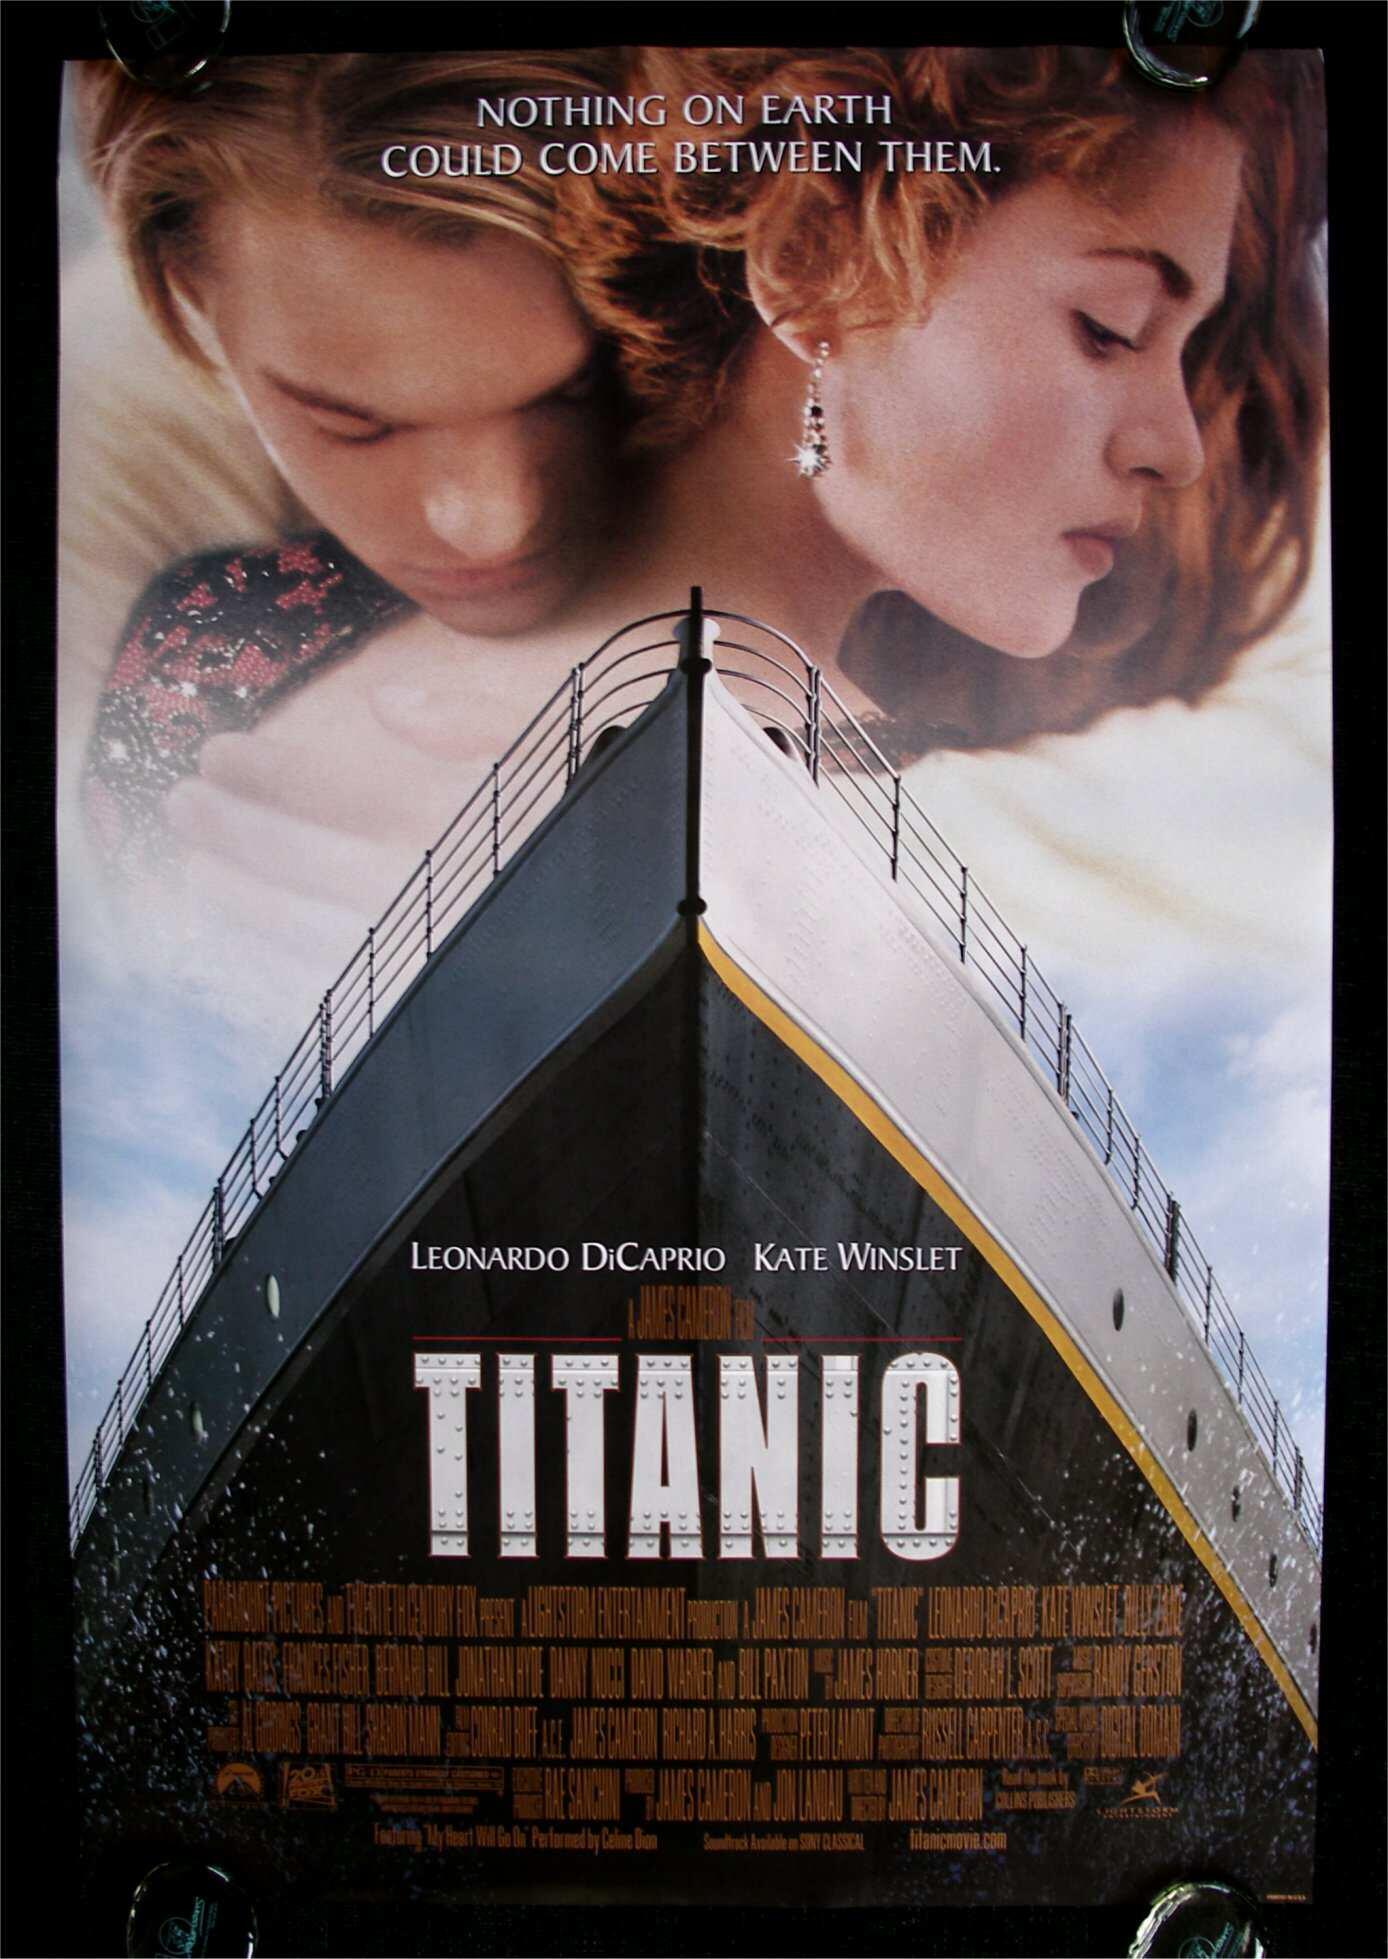 Titanic (1997) - Tickets & Showtimes Near You | Fandango